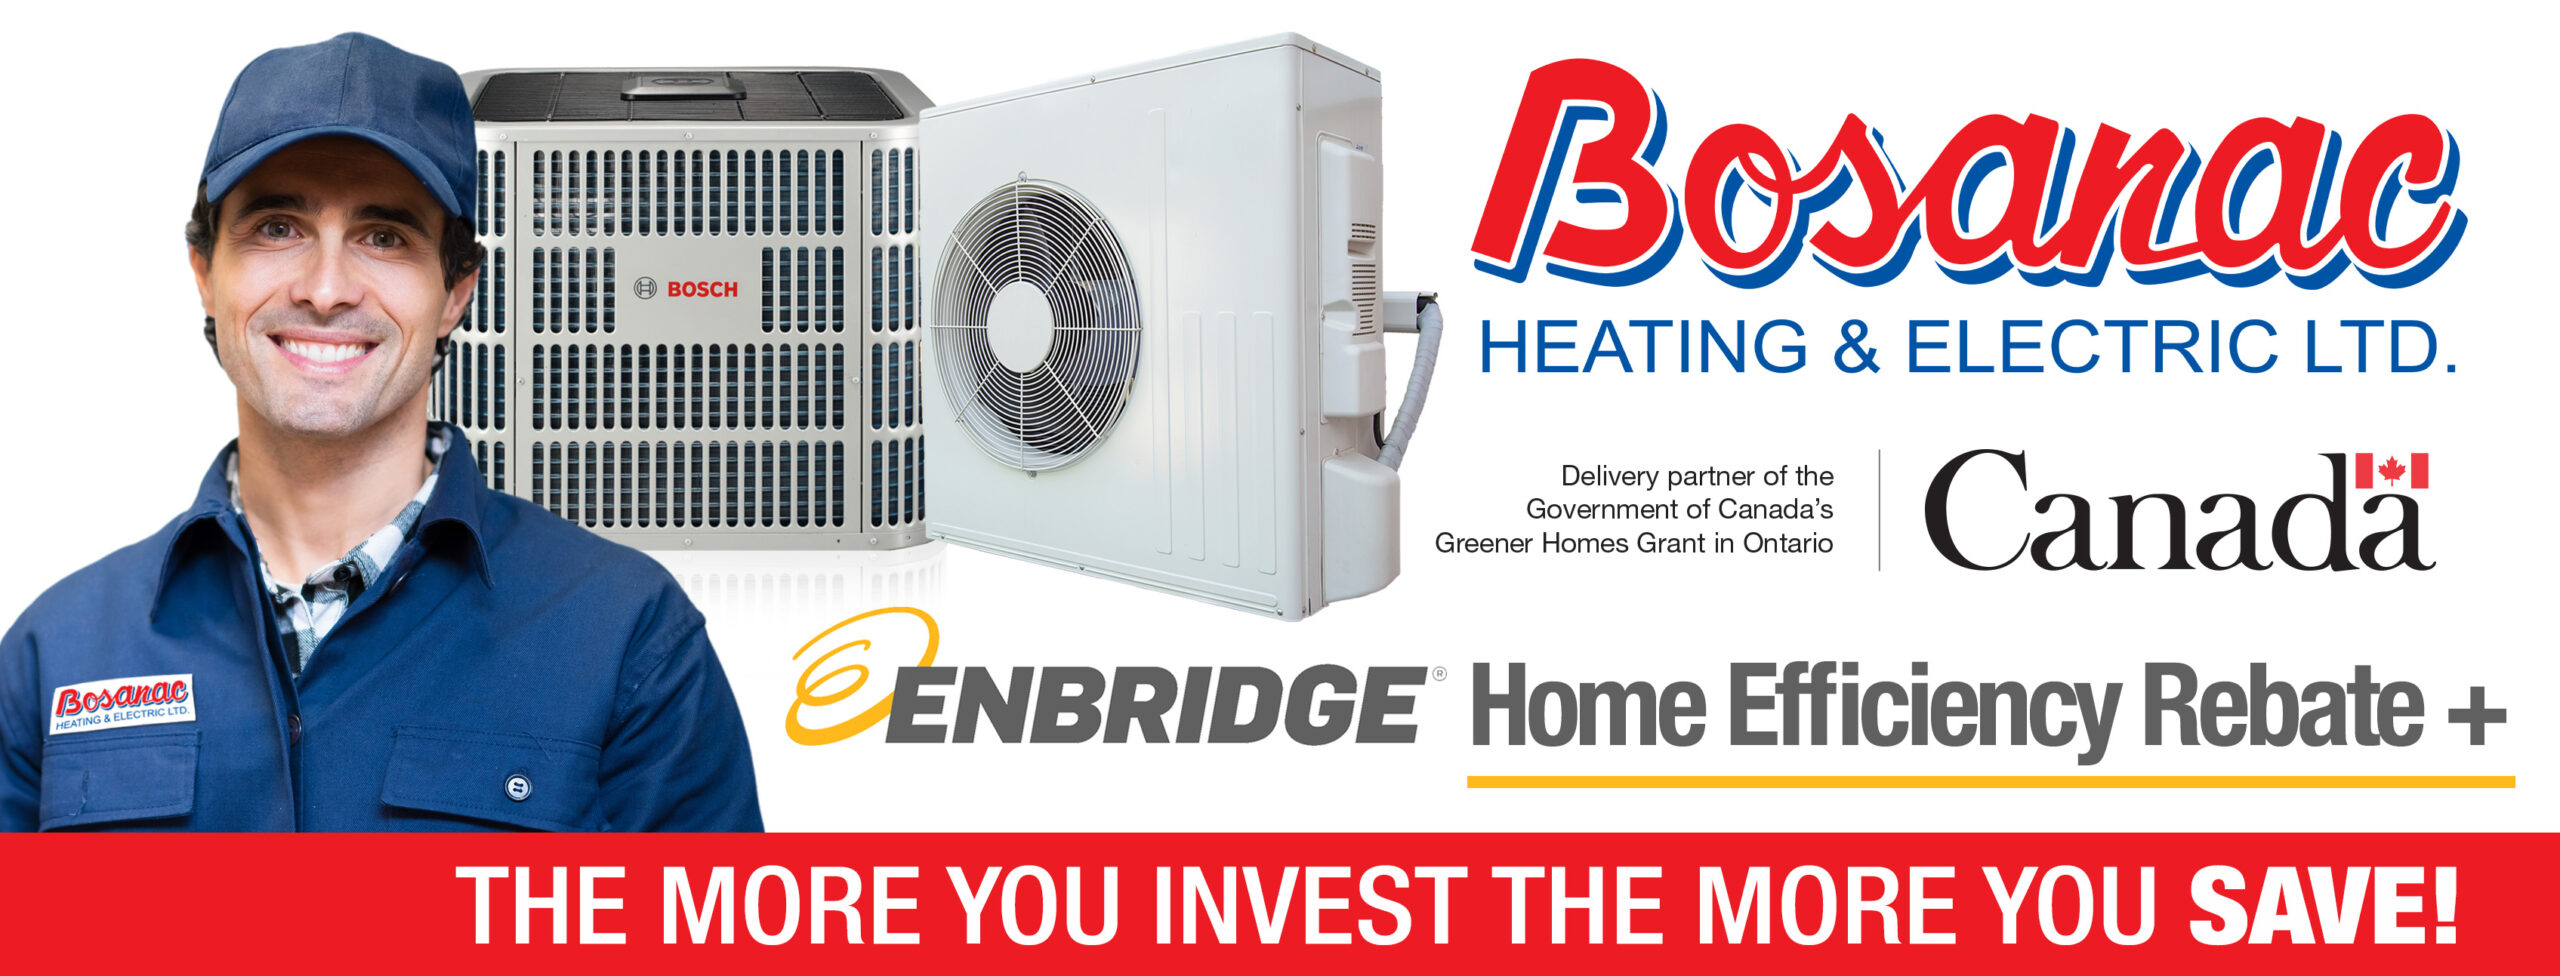 Home Efficiency Rebate Plus Bosanac Heating Electric LTD